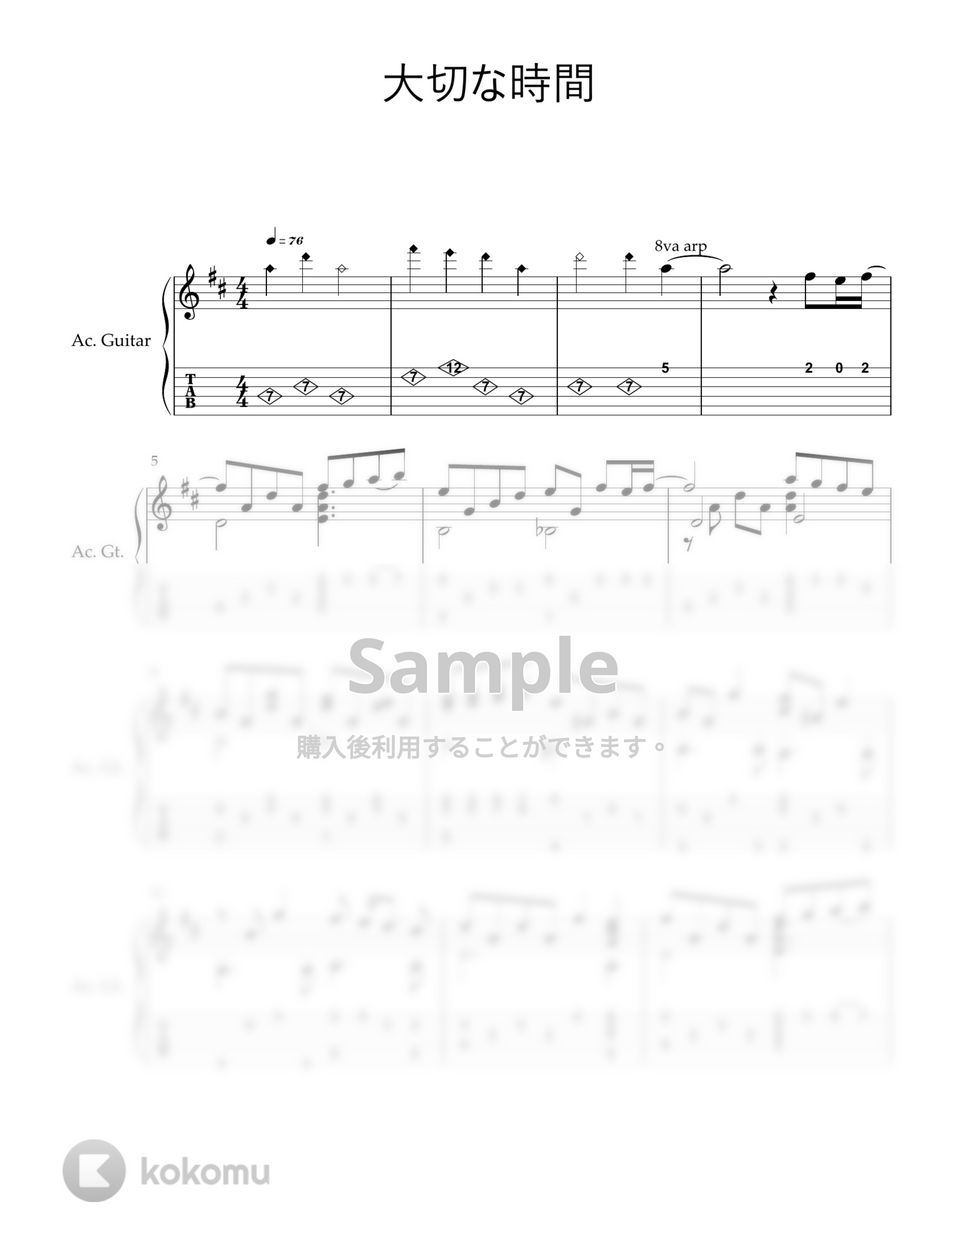 玉置浩二 - 大切な時間 (ソロギター) by DegicoDegio